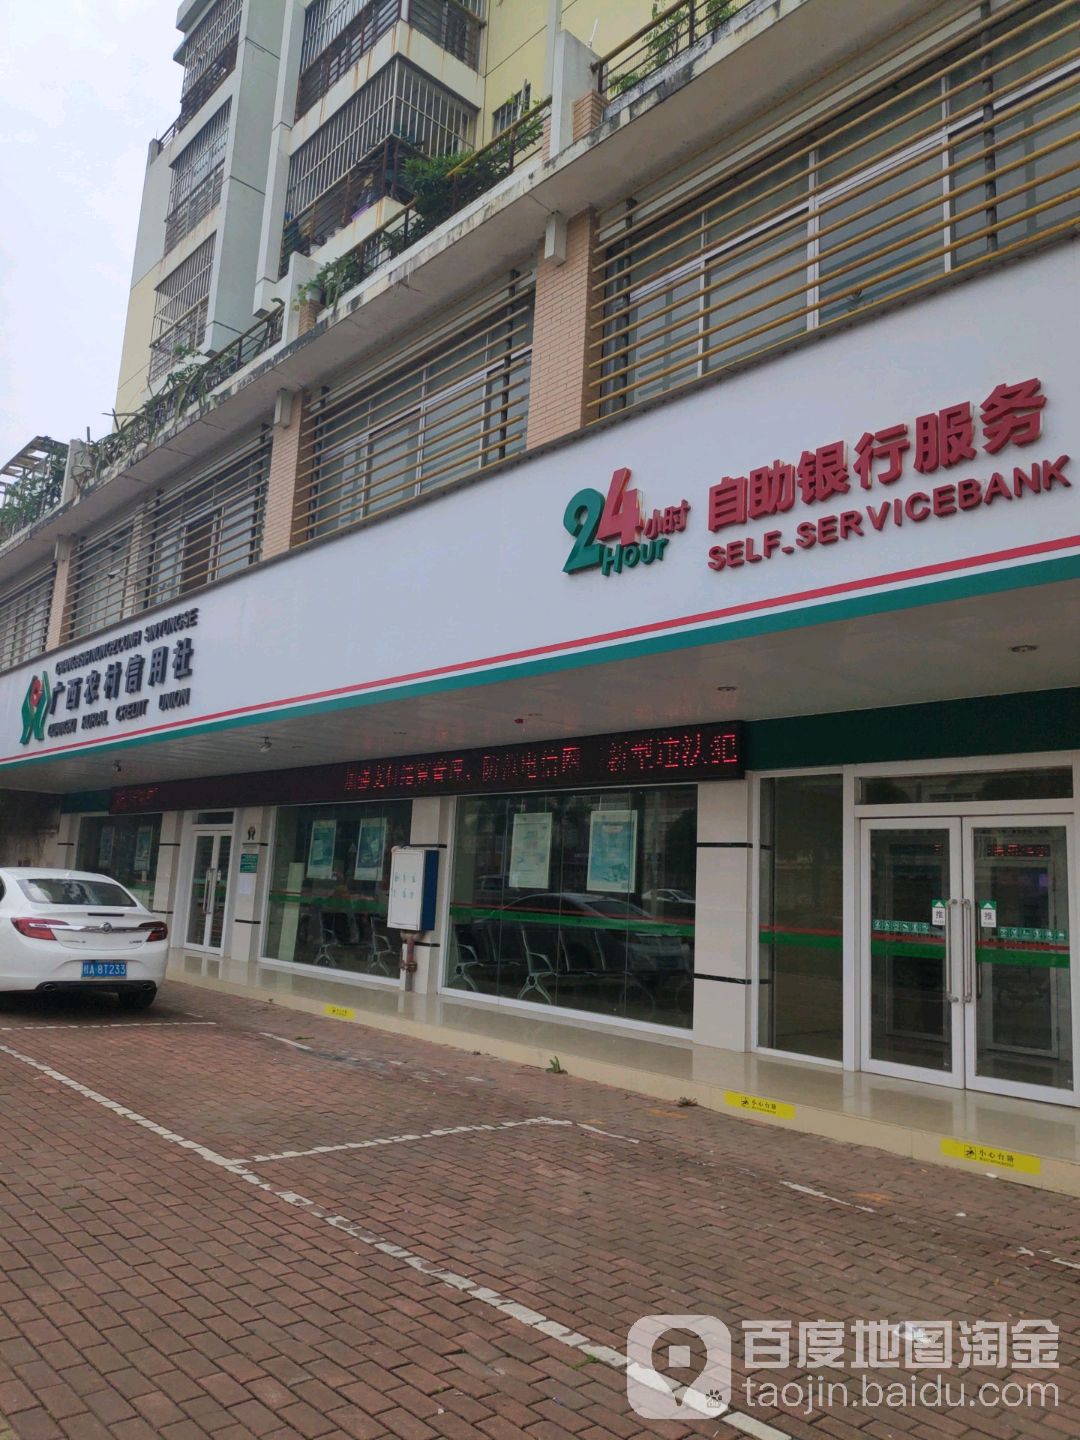 農村商業銀行24小時自助銀行服務(仙葫大道店)